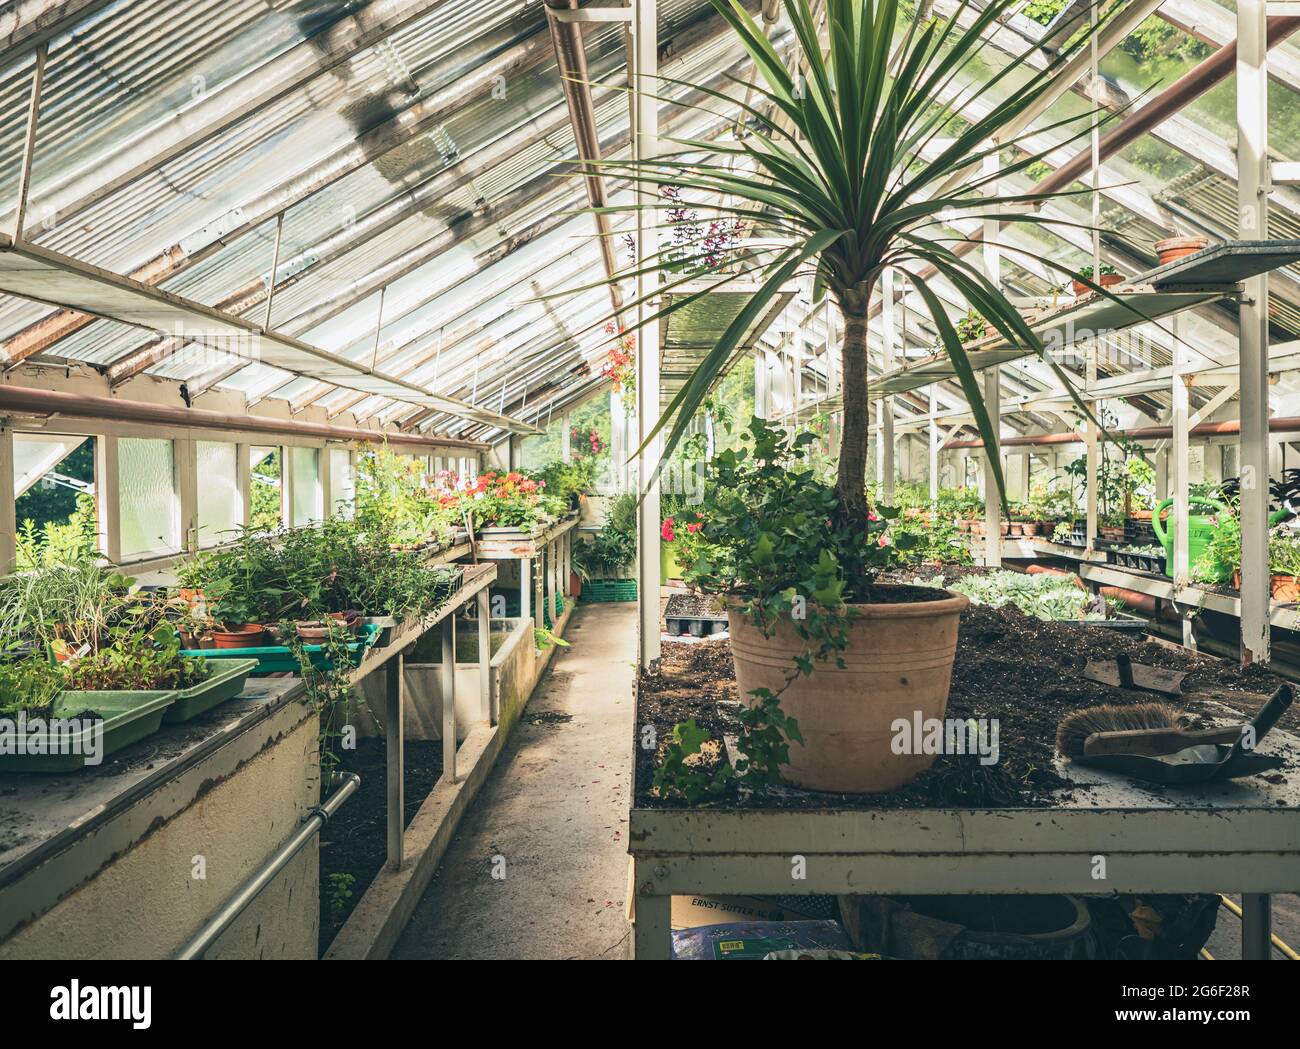 La exuberante colección de plantas vegetales de jardín o plantas exóticas de la casa se cultivan bajo el techo de cristal de un antiguo invernadero victoriano. Foto de stock